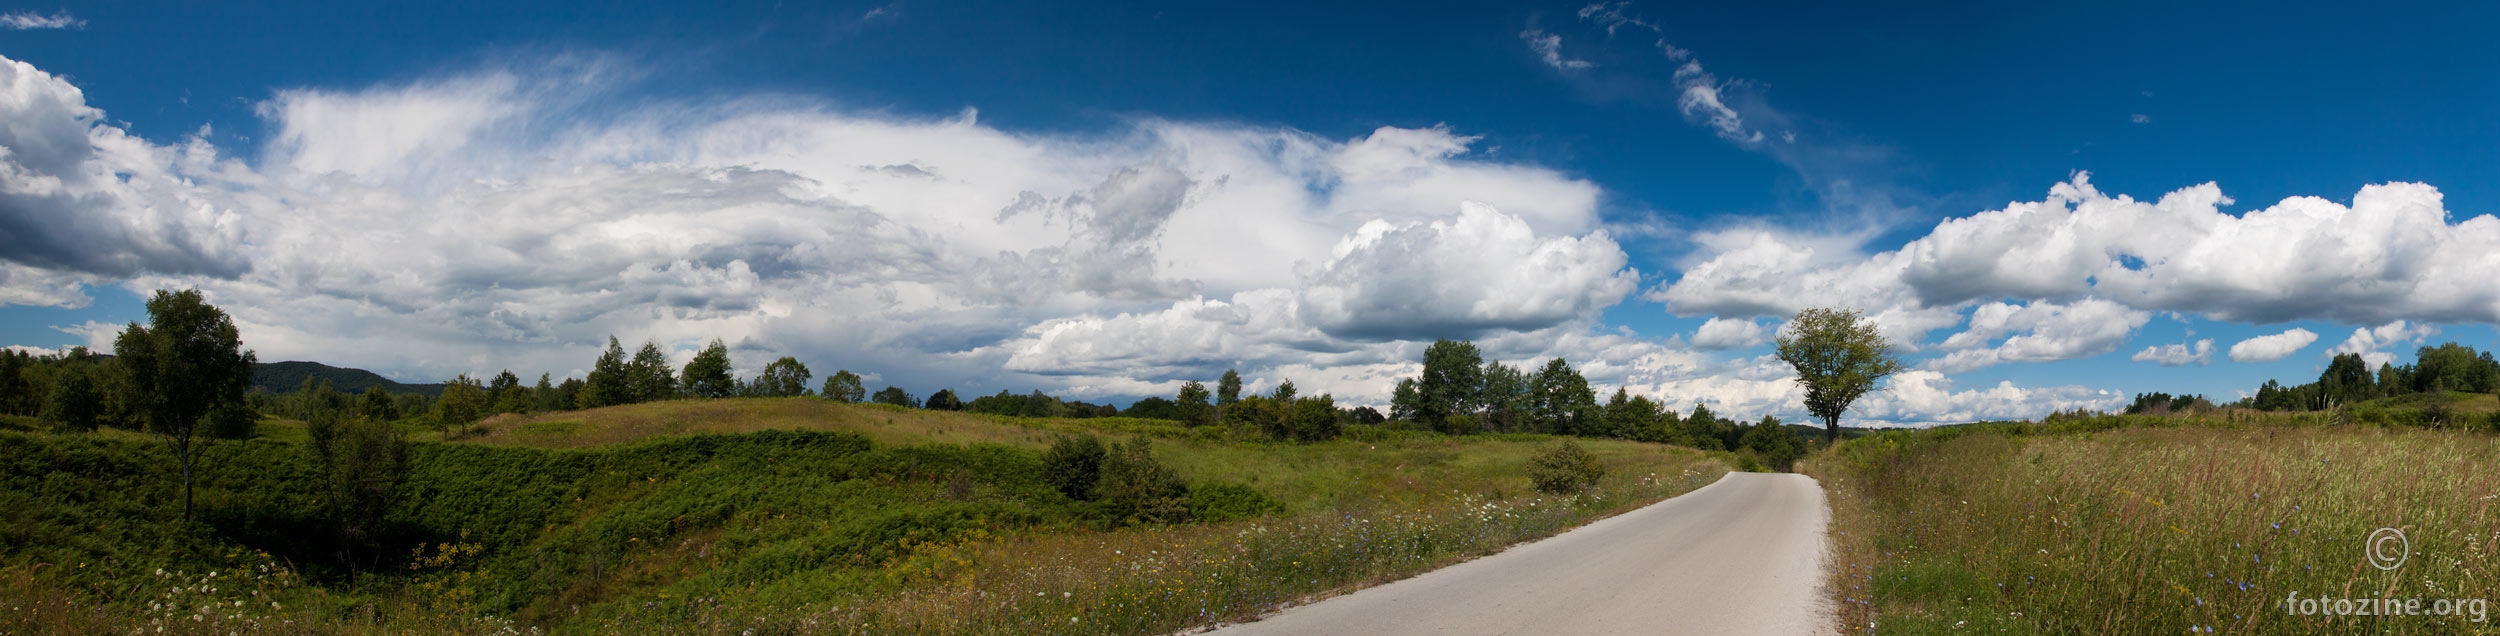 kordunska panorama